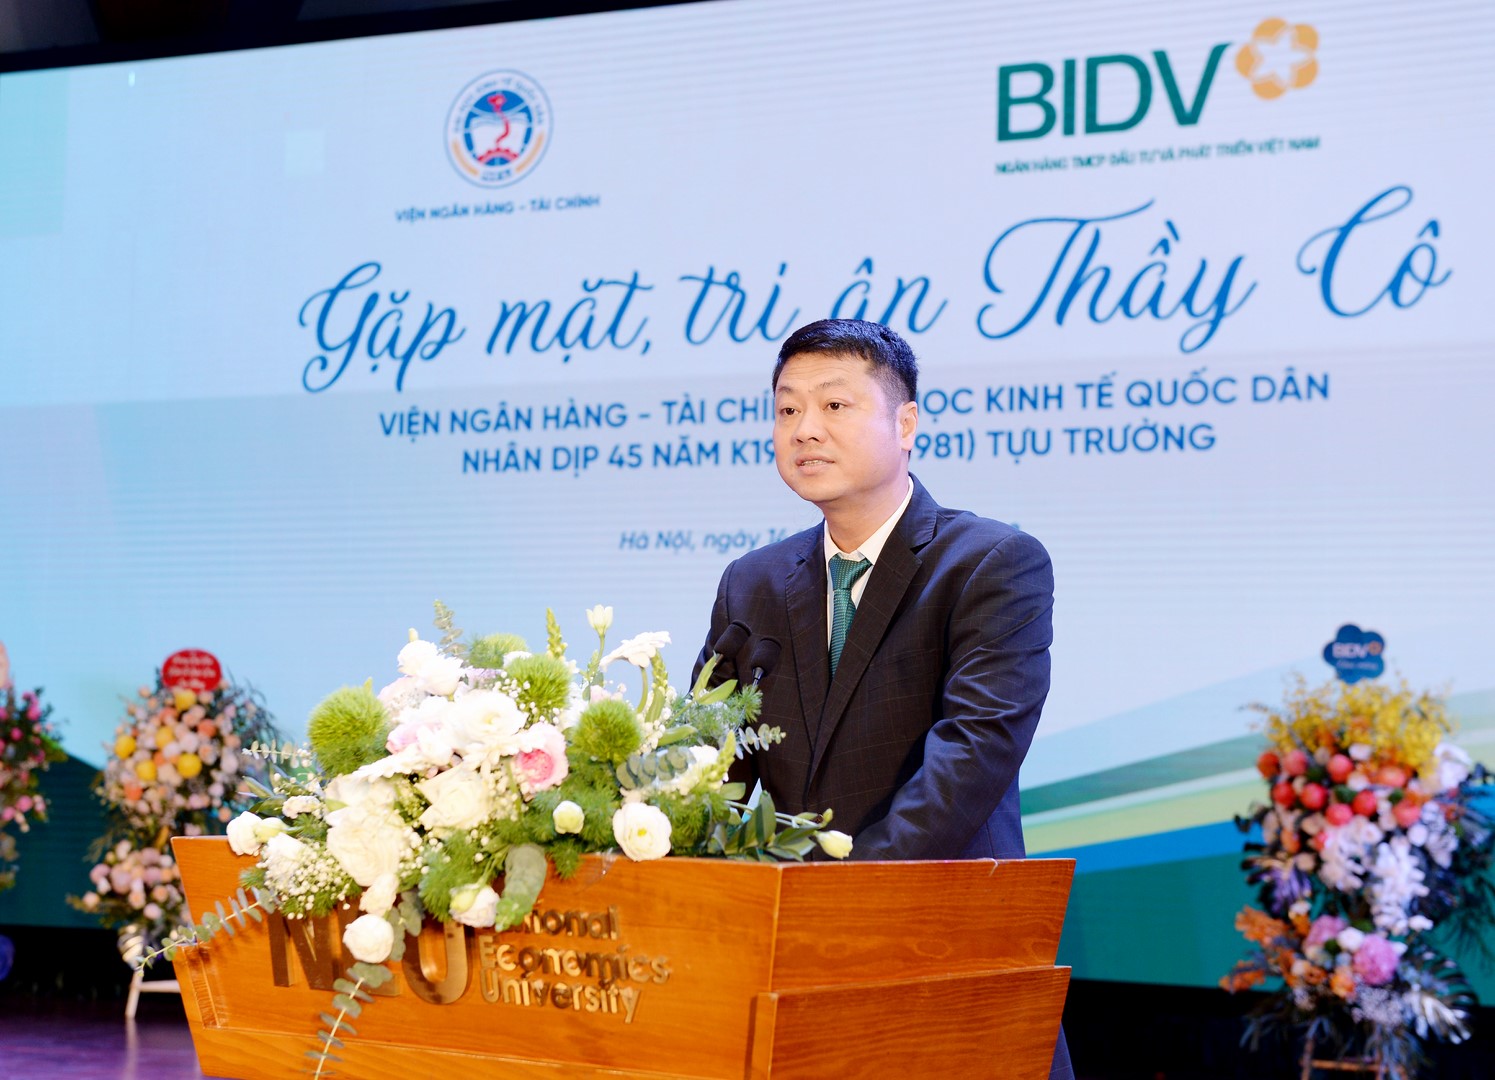 Ông Lê Ngọc Lâm – Ủy viên HĐQT, Tổng giám đốc BIDV phát biểu